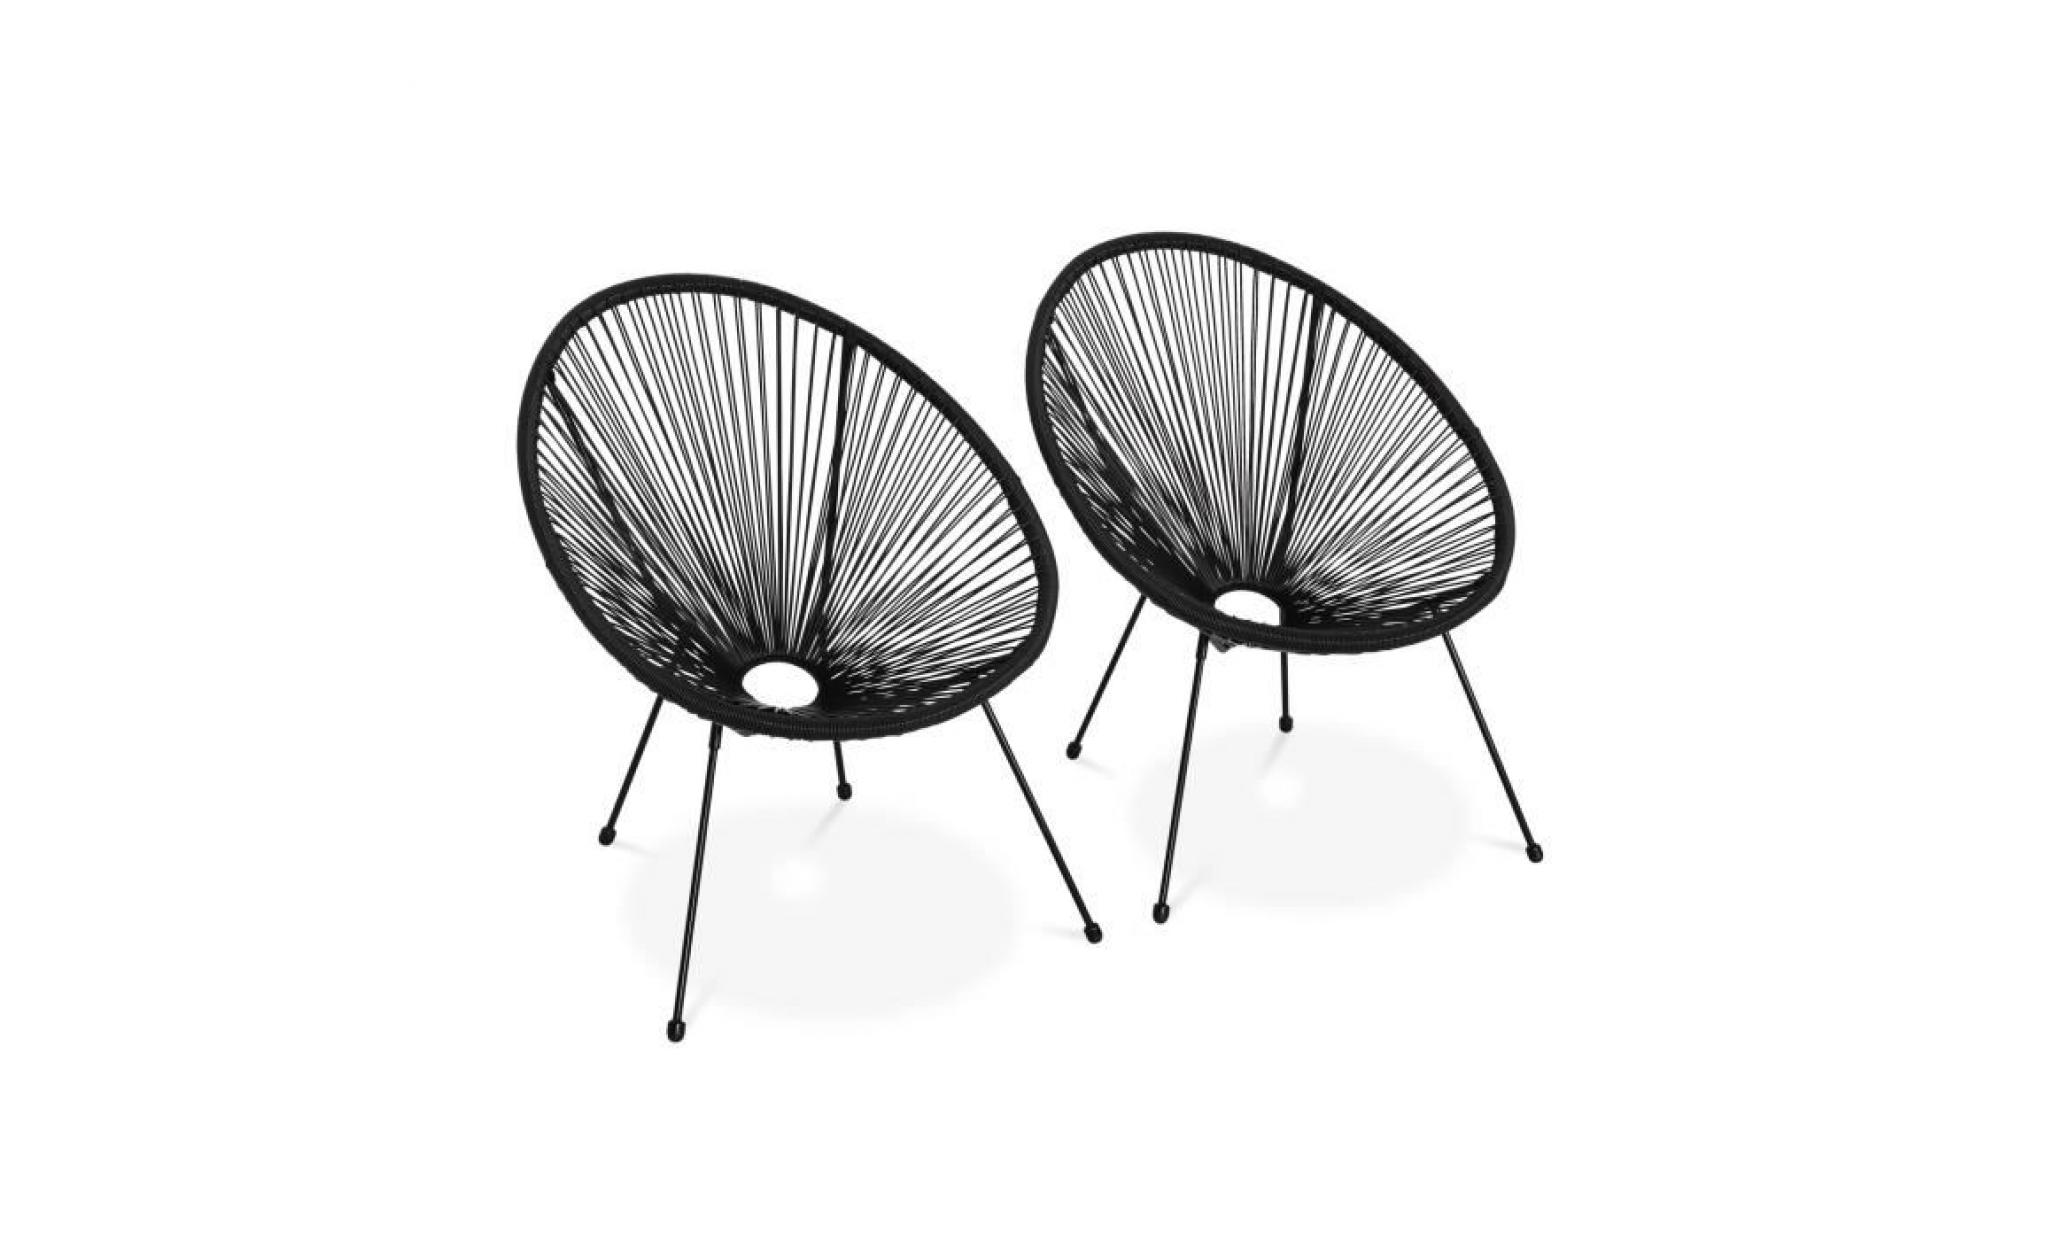 lot de 2 fauteuils design oeuf   acapulco noir   fauteuils 4 pieds design rétro, cordage plastique, intérieur / extérieur